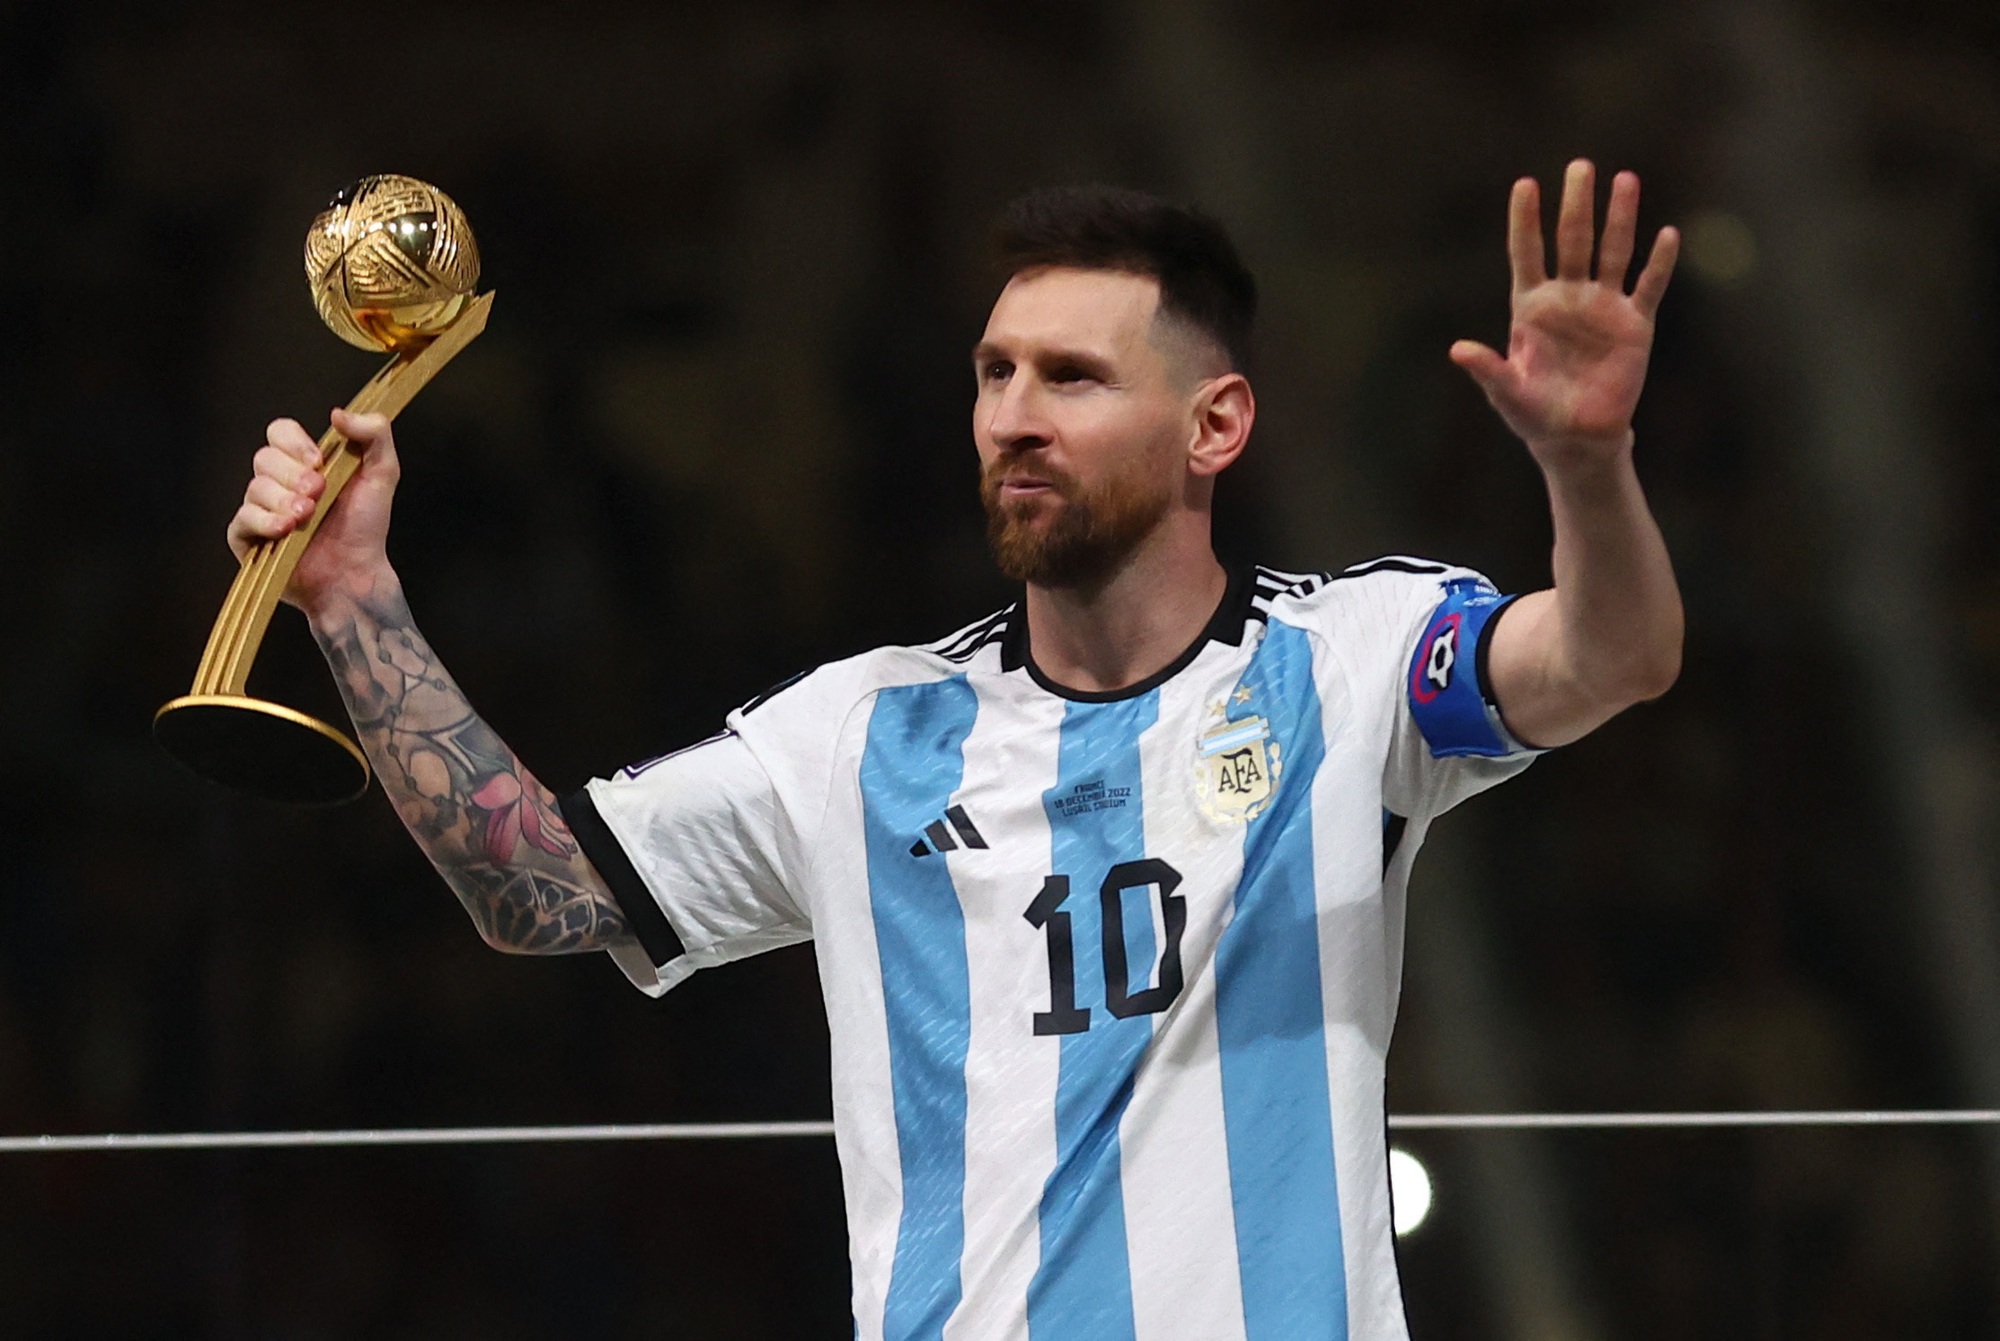 Argentina, World Cup và Messi luôn là những từ khóa sáng giá trong thế giới bóng đá. Và năm nay, với sự xuất sắc của Messi, Argentina đã một lần nữa vượt qua những đối thủ khó chịu để tiến vào vòng chung kết World Cup. Hãy cùng tìm hiểu thêm về cuộc hành trình đầy thử thách này của đội bóng nước này.